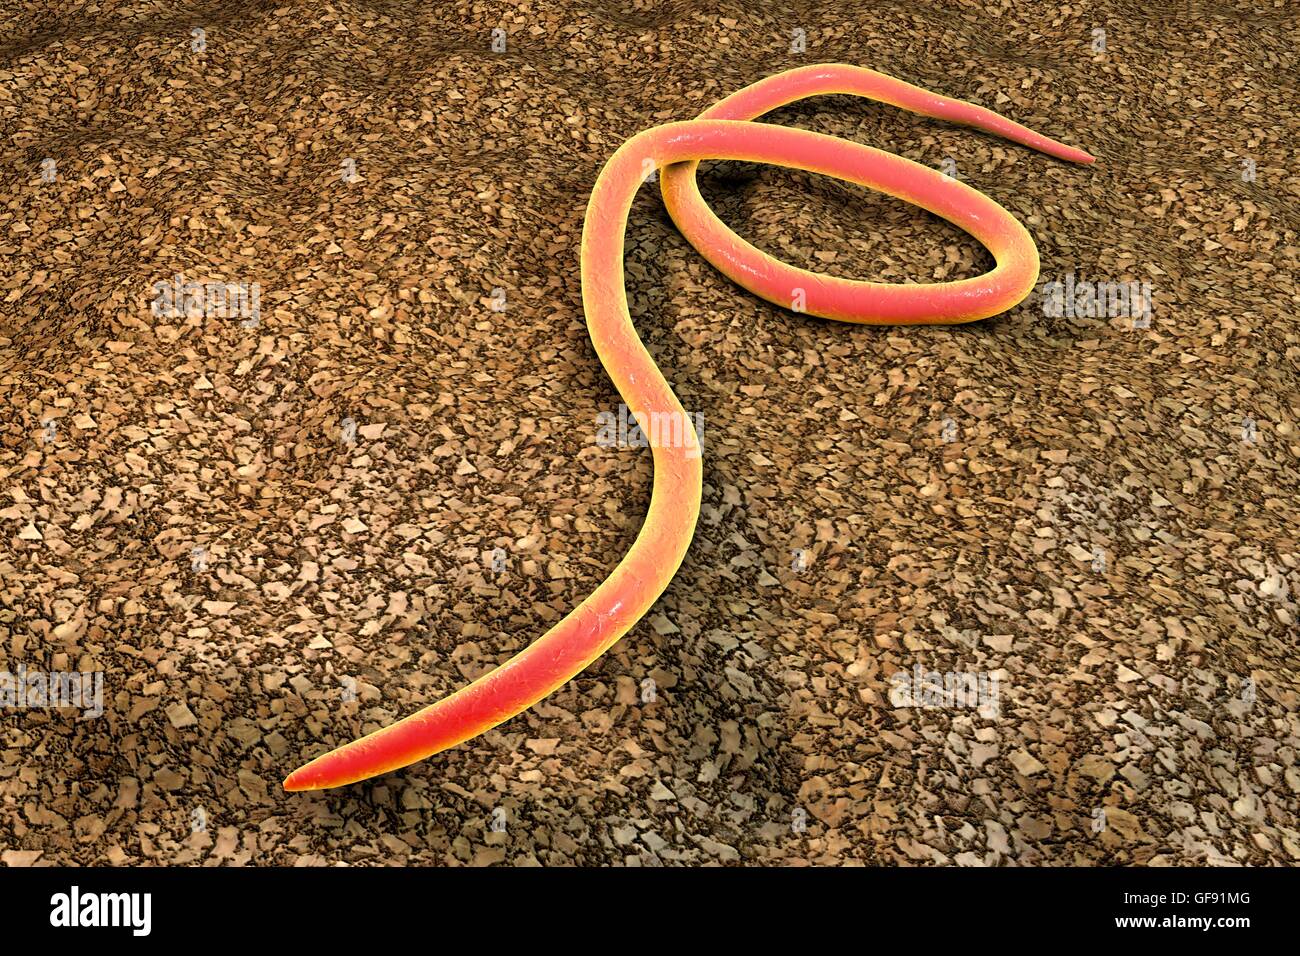 Fadenwurm, Computer Bild. Fadenwürmer sind Fadenwürmer, die den Dickdarm und Blinddarm vieler Tiere parasitieren. Beim Menschen verursachen sie die gemeinsame Infektion Enterobiasis. Nematoden sind unsegmented Würmer, die parasitäre oder freilebende Stockfoto